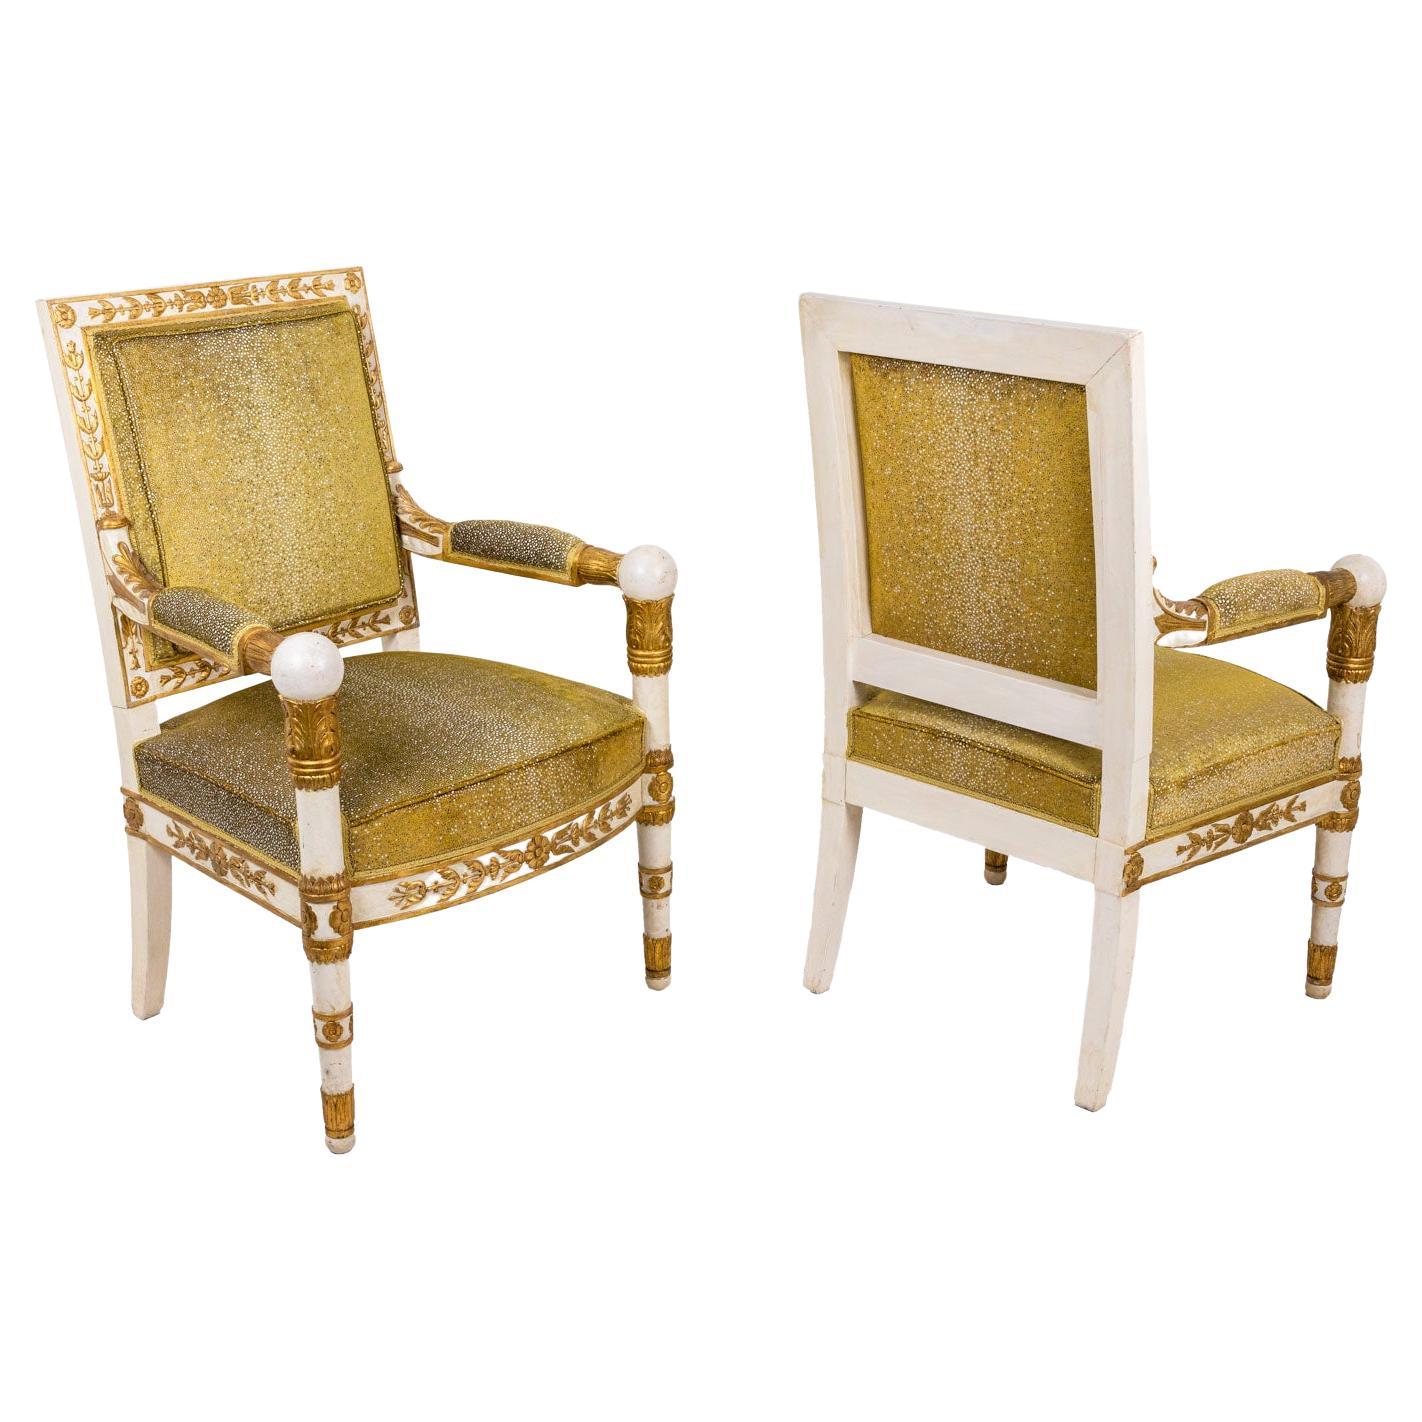 Zwei Sessel im Empire-Stil in Weiß und Gold, mit Haifischhaut-Besatz, 1950er Jahre